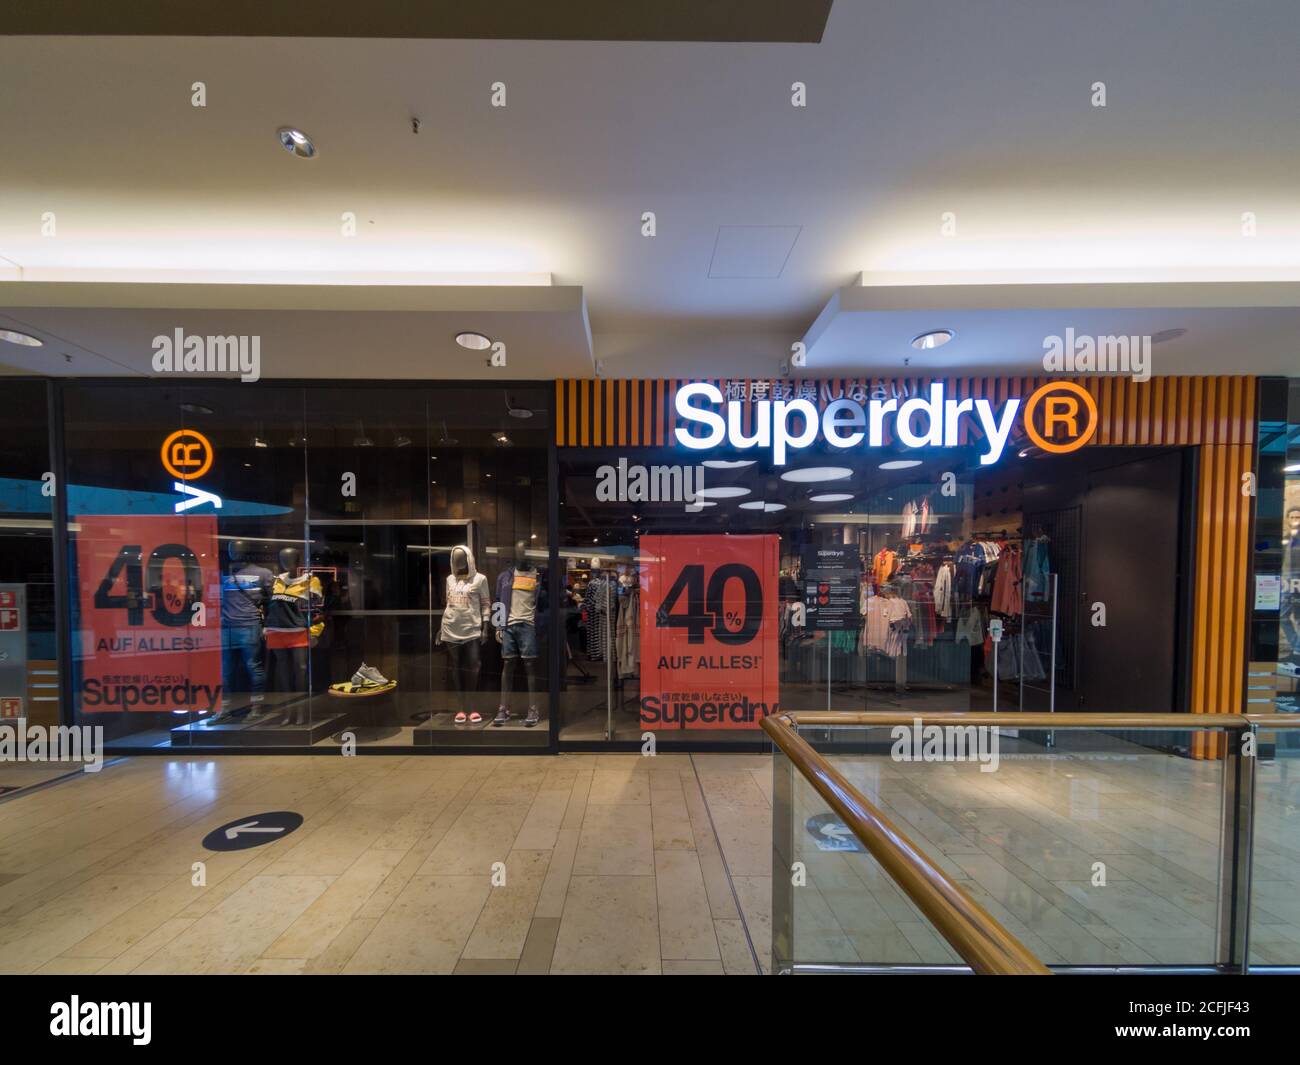 Magasin de magasin SUPERDRY à Mall à Hanovre, Allemagne, 31.8.2020 Superdry  r est une marque célèbre de vêtements de mode de style japonais. Vêtements  pour hommes et Photo Stock - Alamy